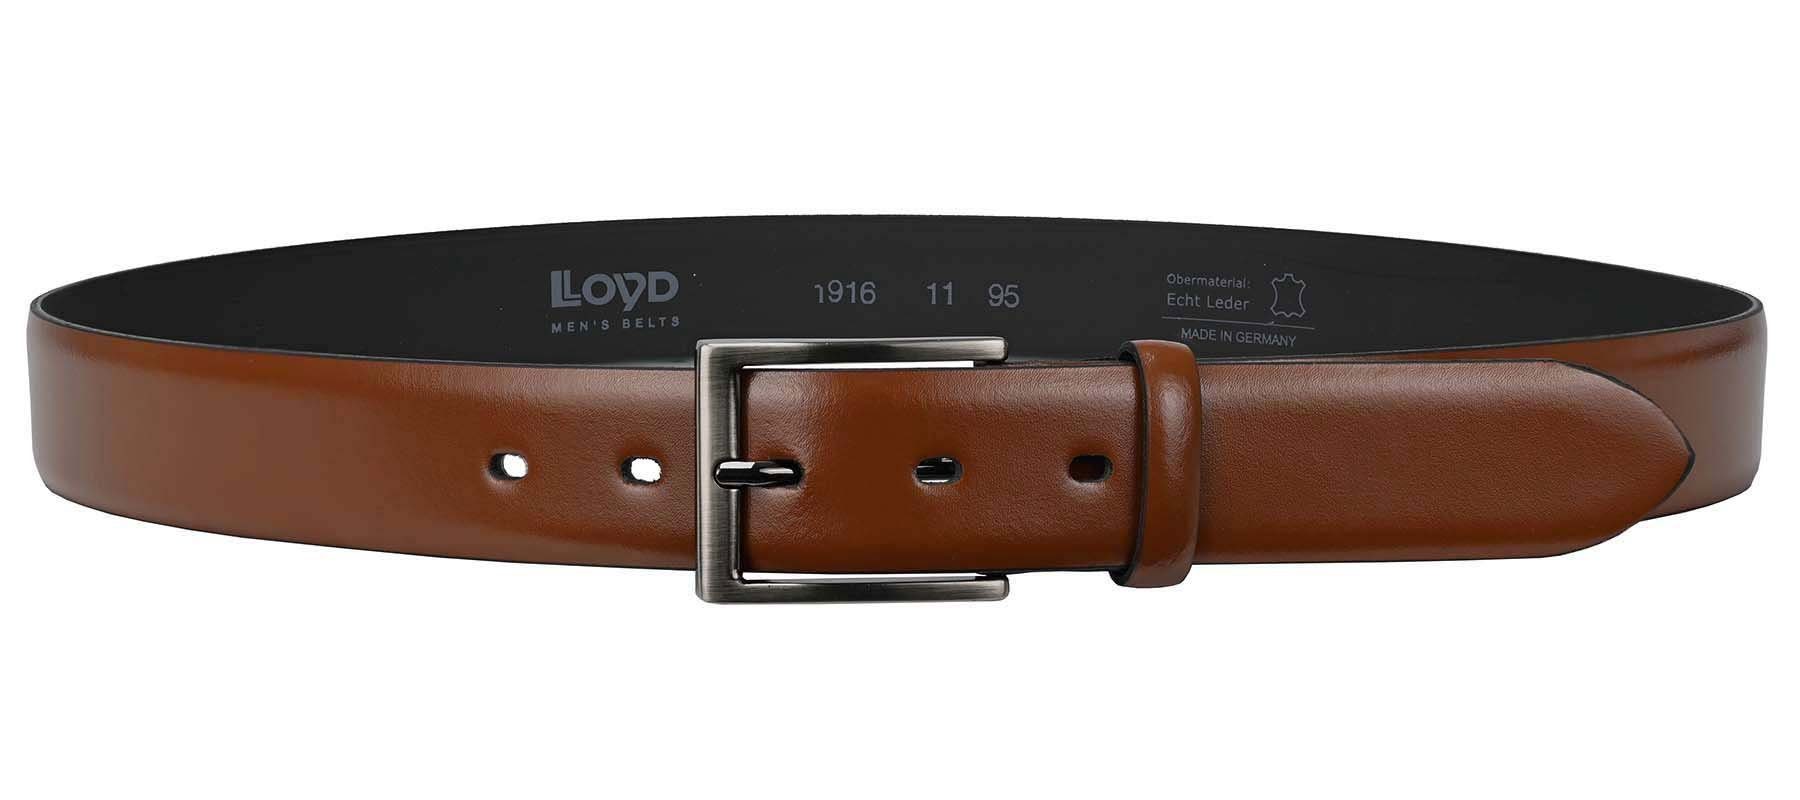 LLOYD Men’s Belts Ledergürtel mm 35 LLOYD-Herren-Ledergürtel Dorn-Schließe cognac